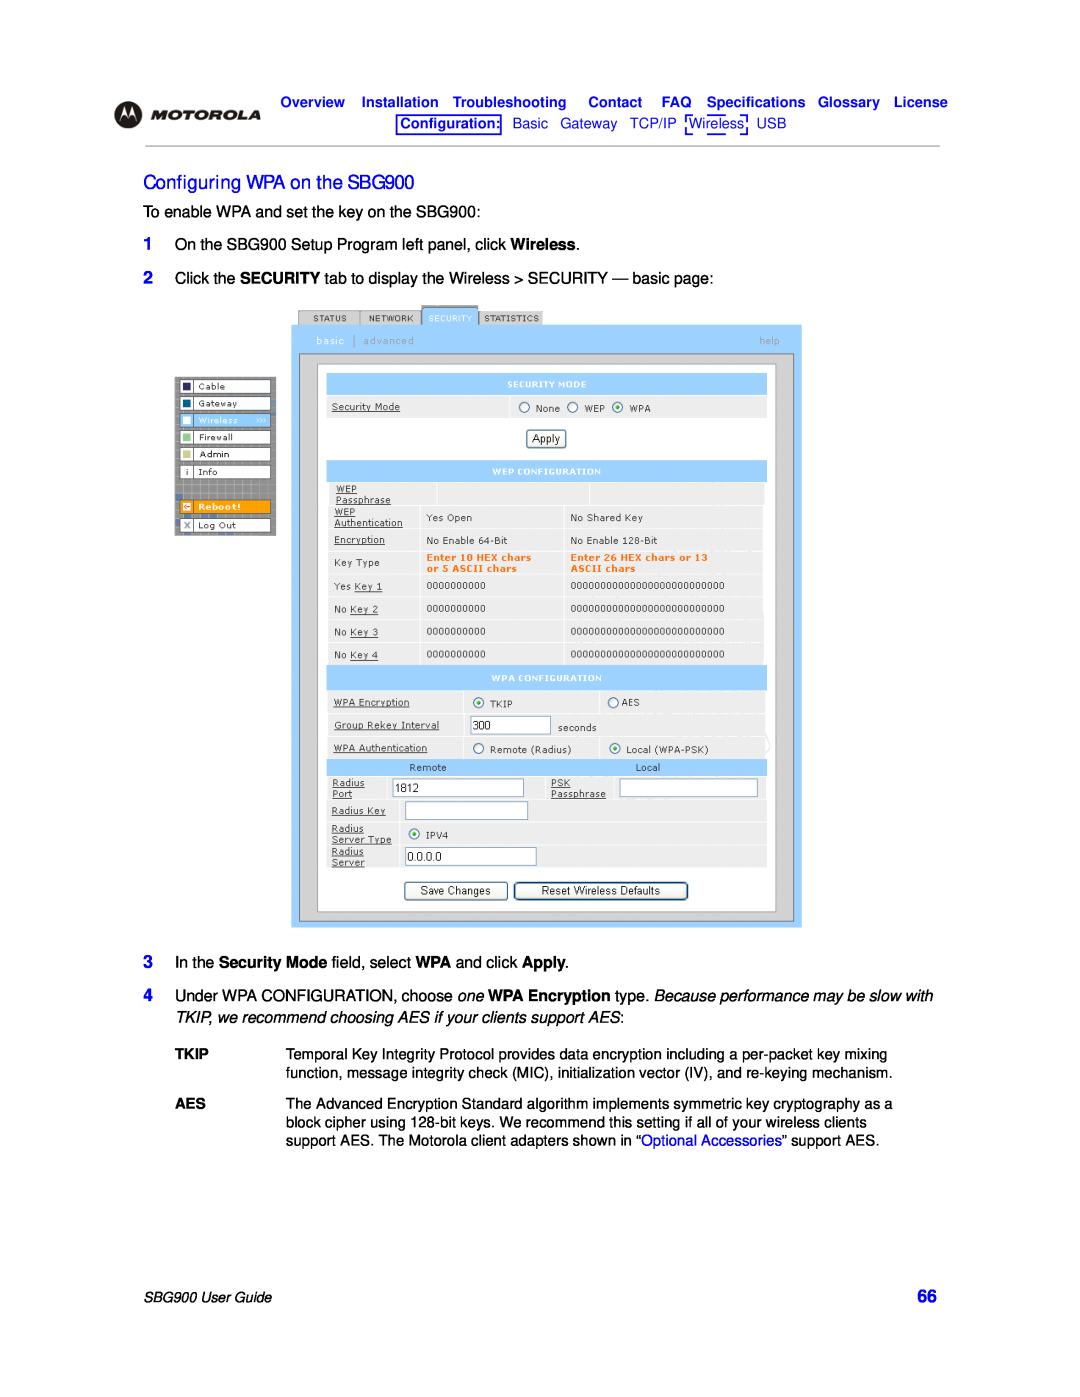 Motorola manual Configuring WPA on the SBG900 